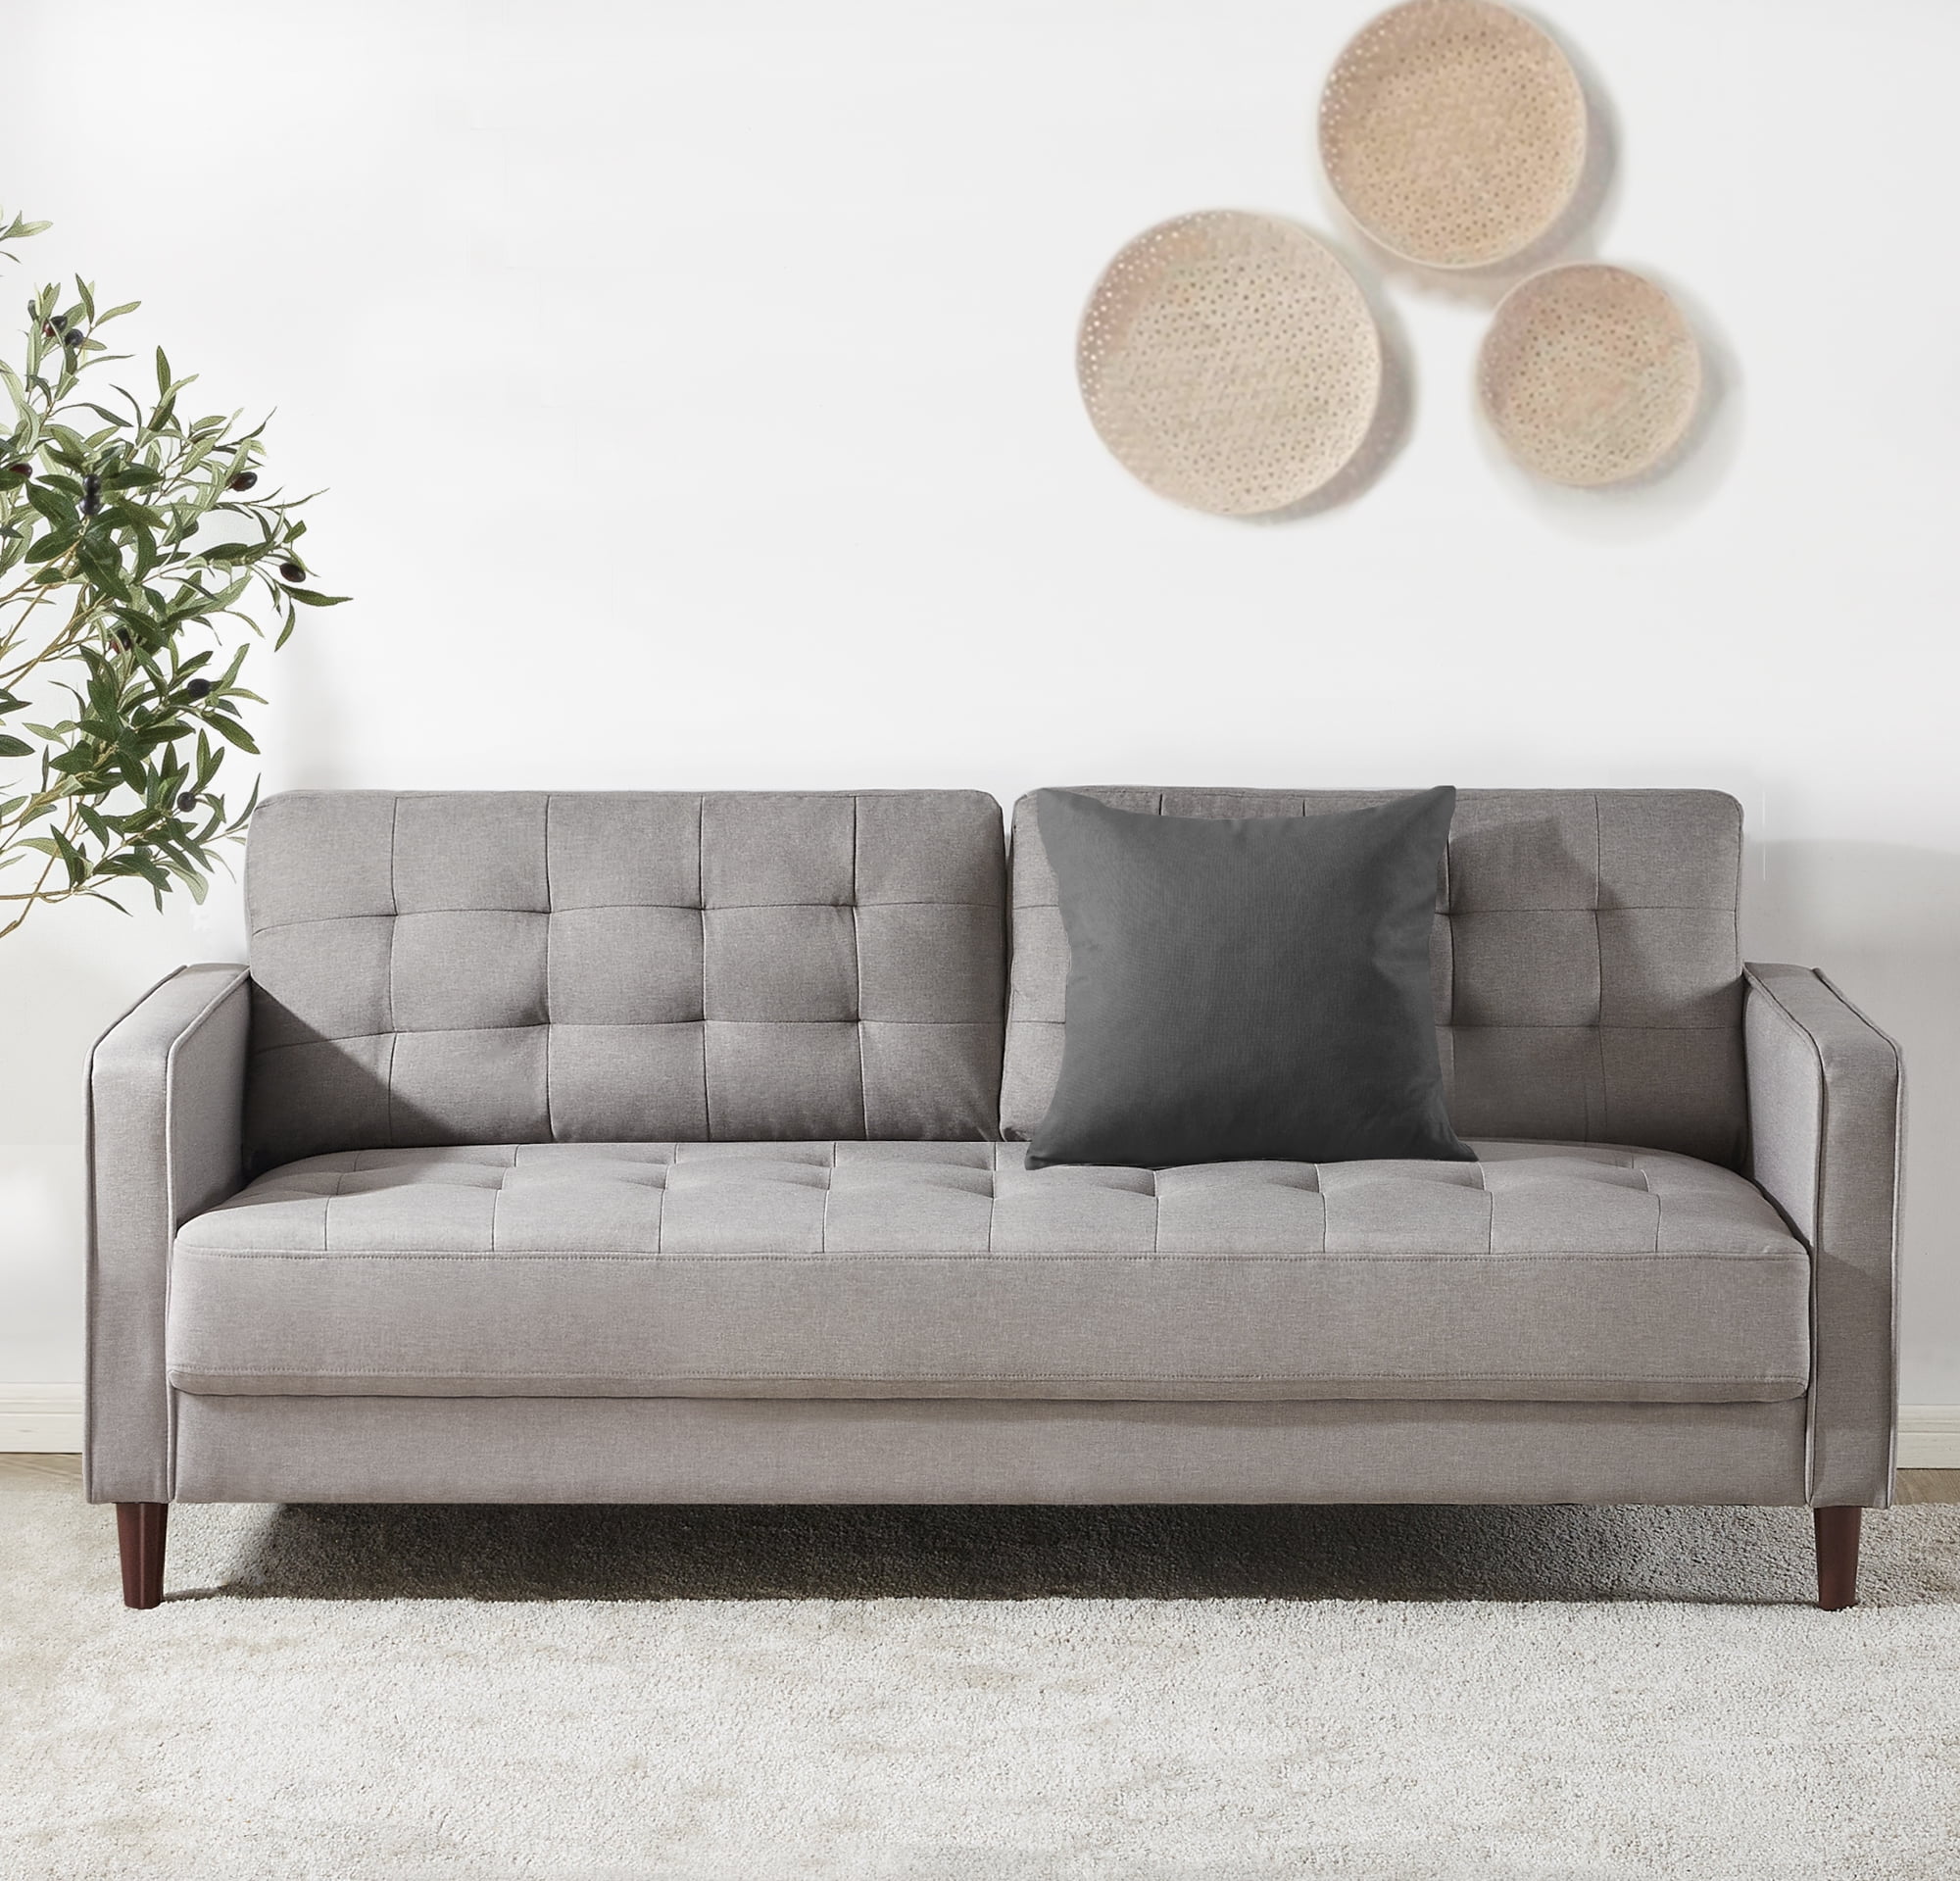 Zinus Benton Sofa Couch Stone Grey